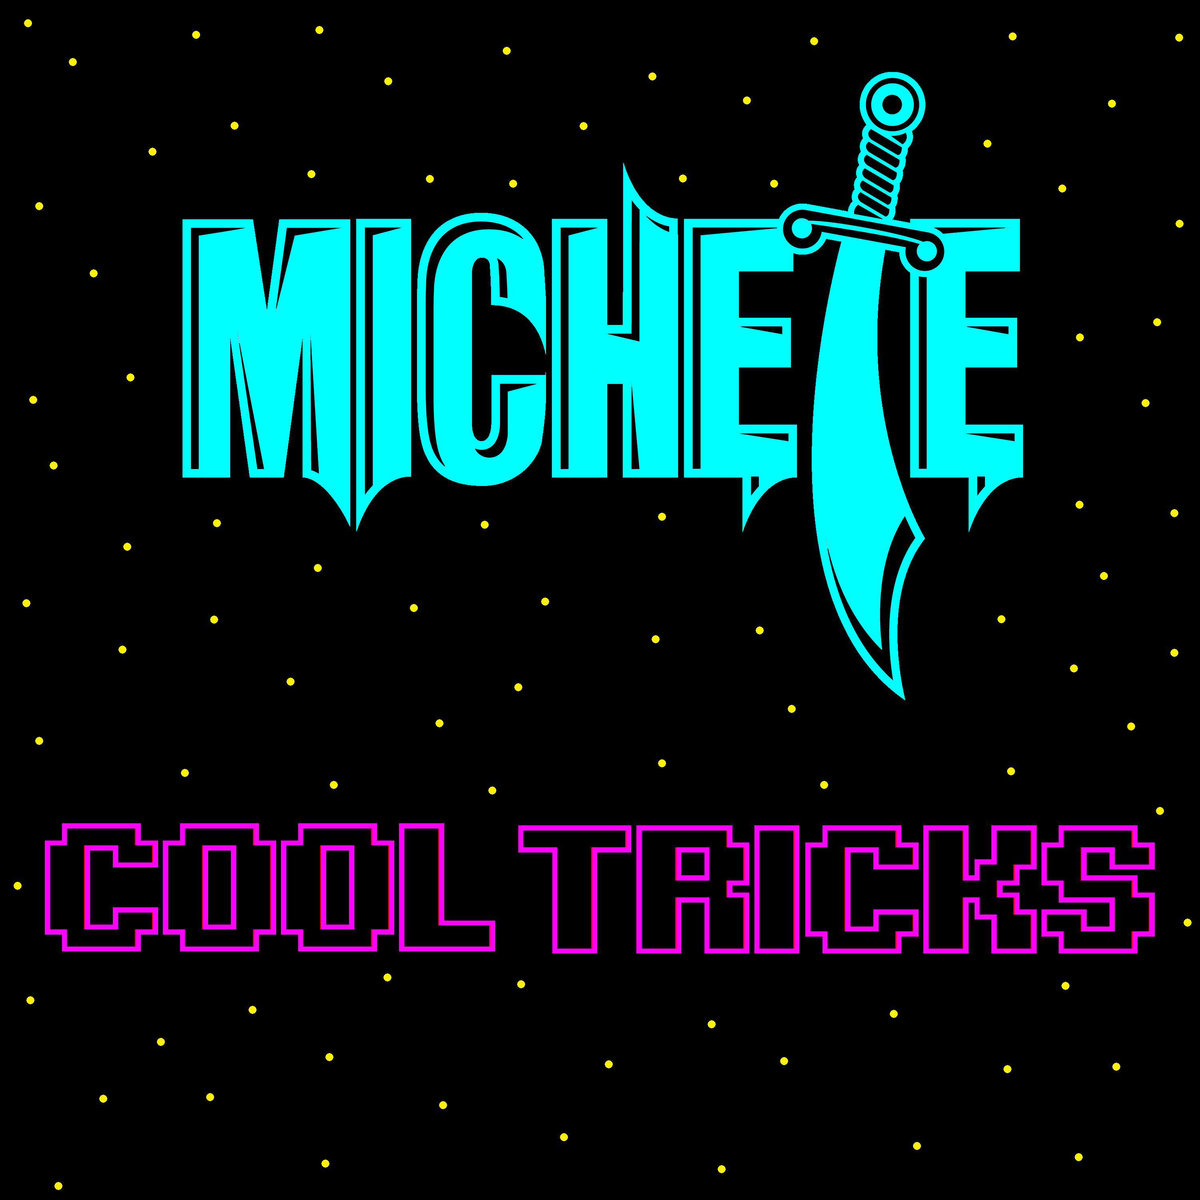 Michete's Cool Tricks